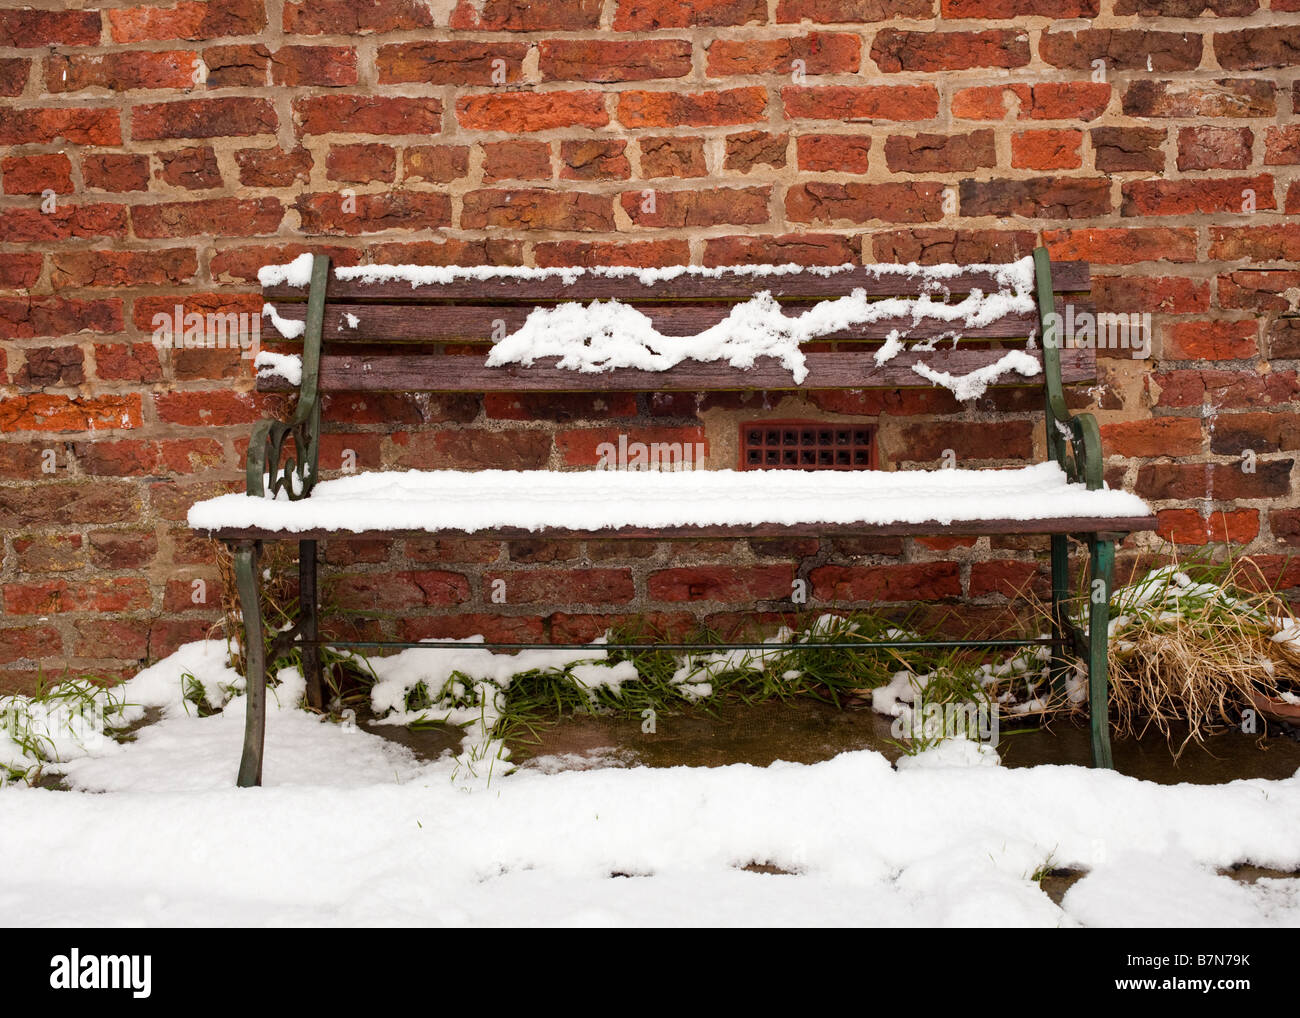 Jardin ancien banc siège recouverts de neige en hiver dans un jardin anglais Banque D'Images